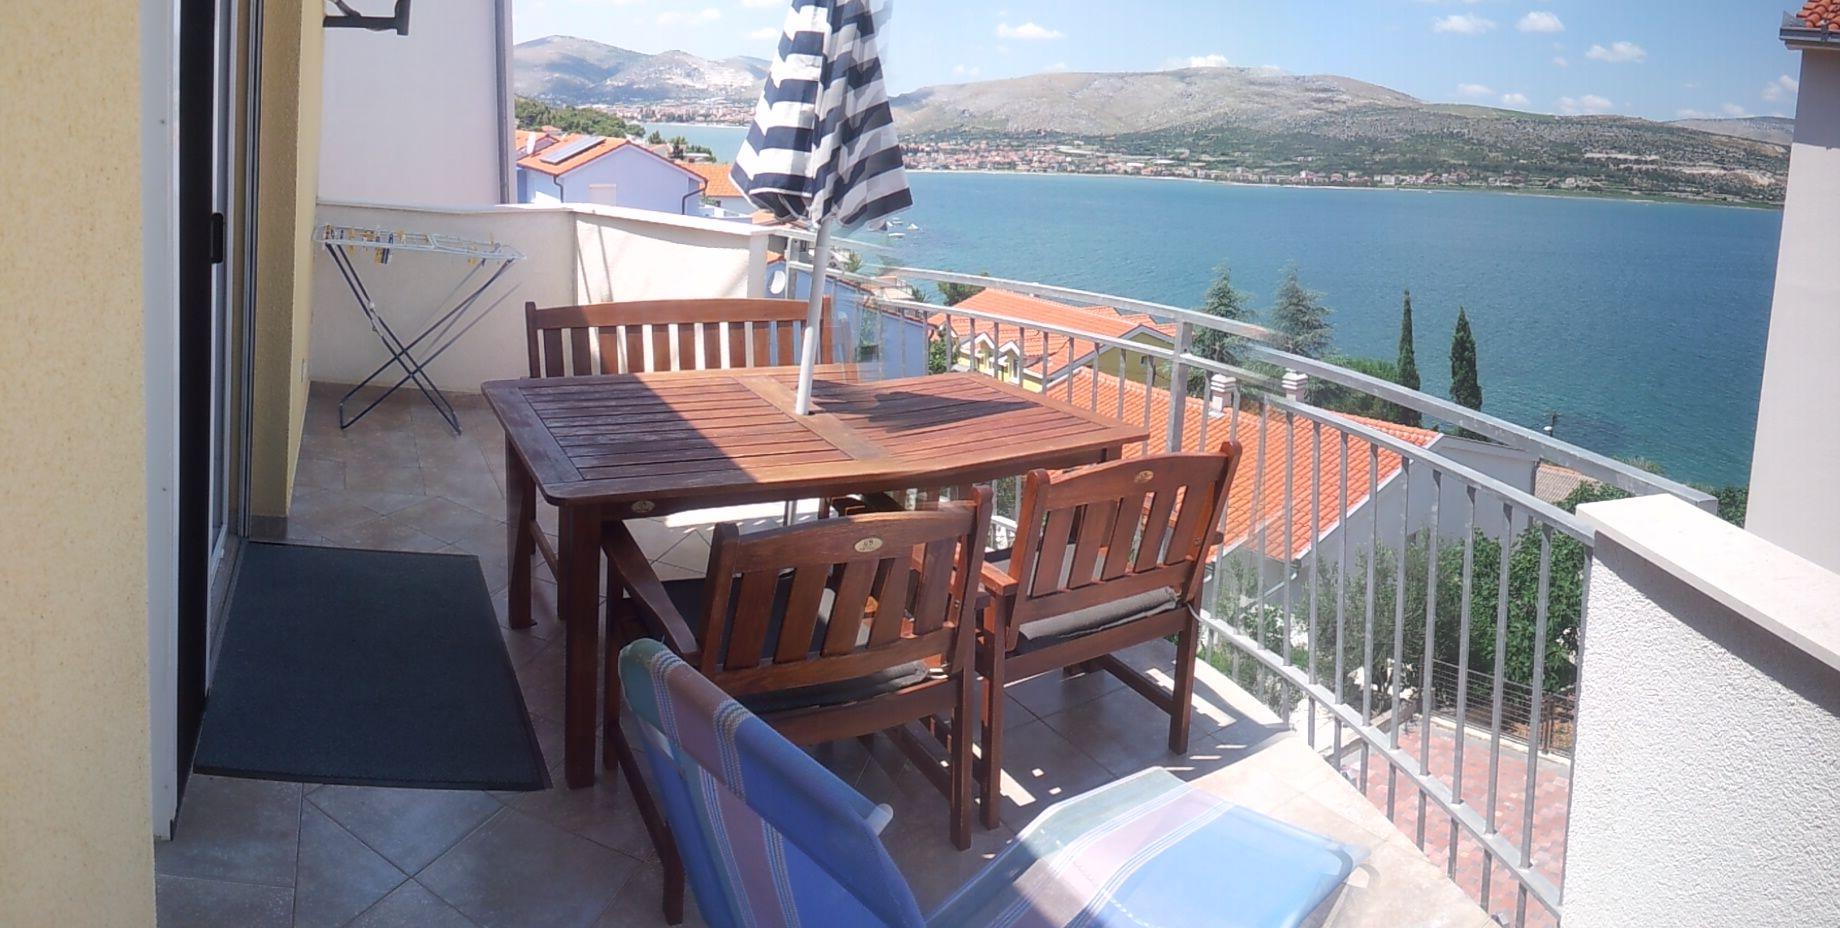 Ferienwohnung für 4 Personen ca. 50 m² i Ferienwohnung in Kroatien